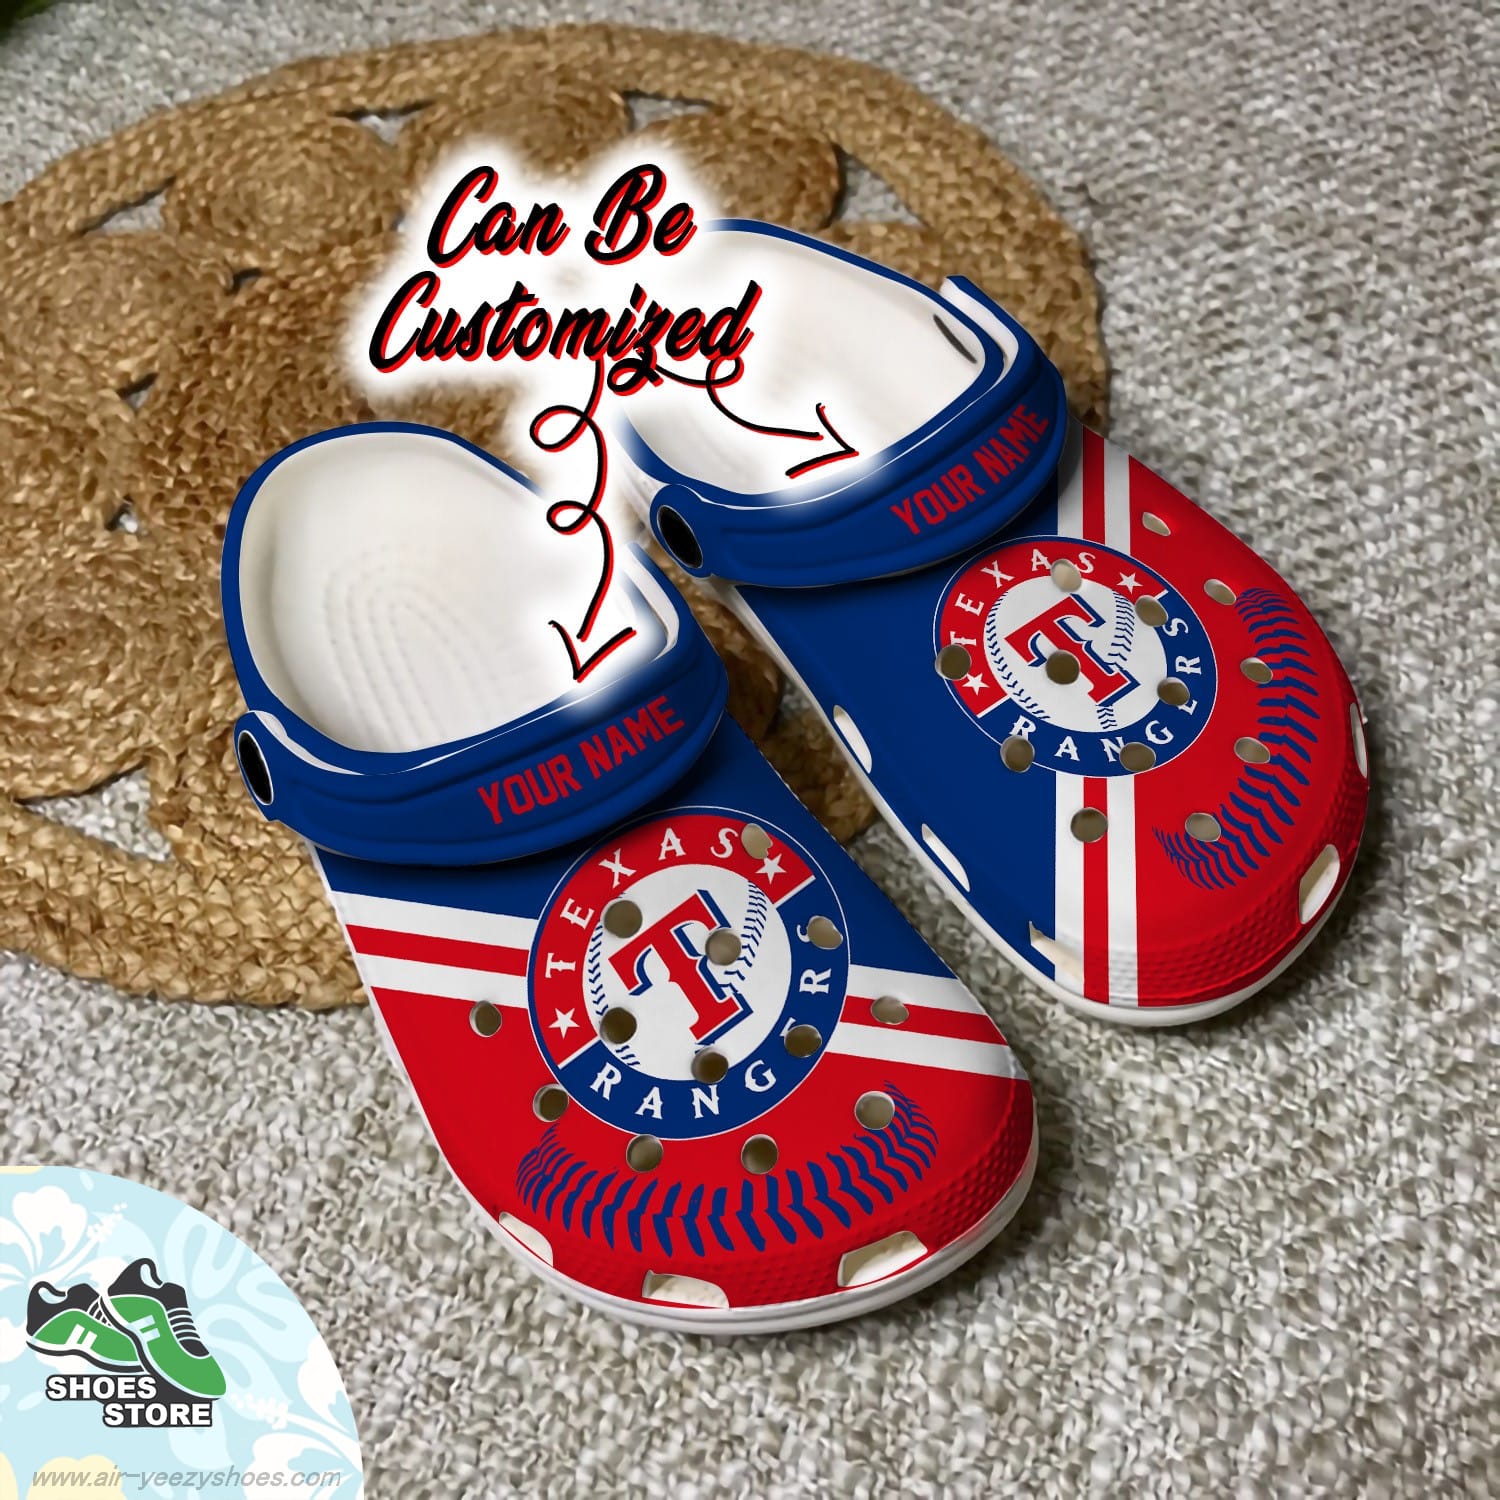 Texas Rangers Personalized Baseball Logo Team Clog Baseball Crocs Shoes